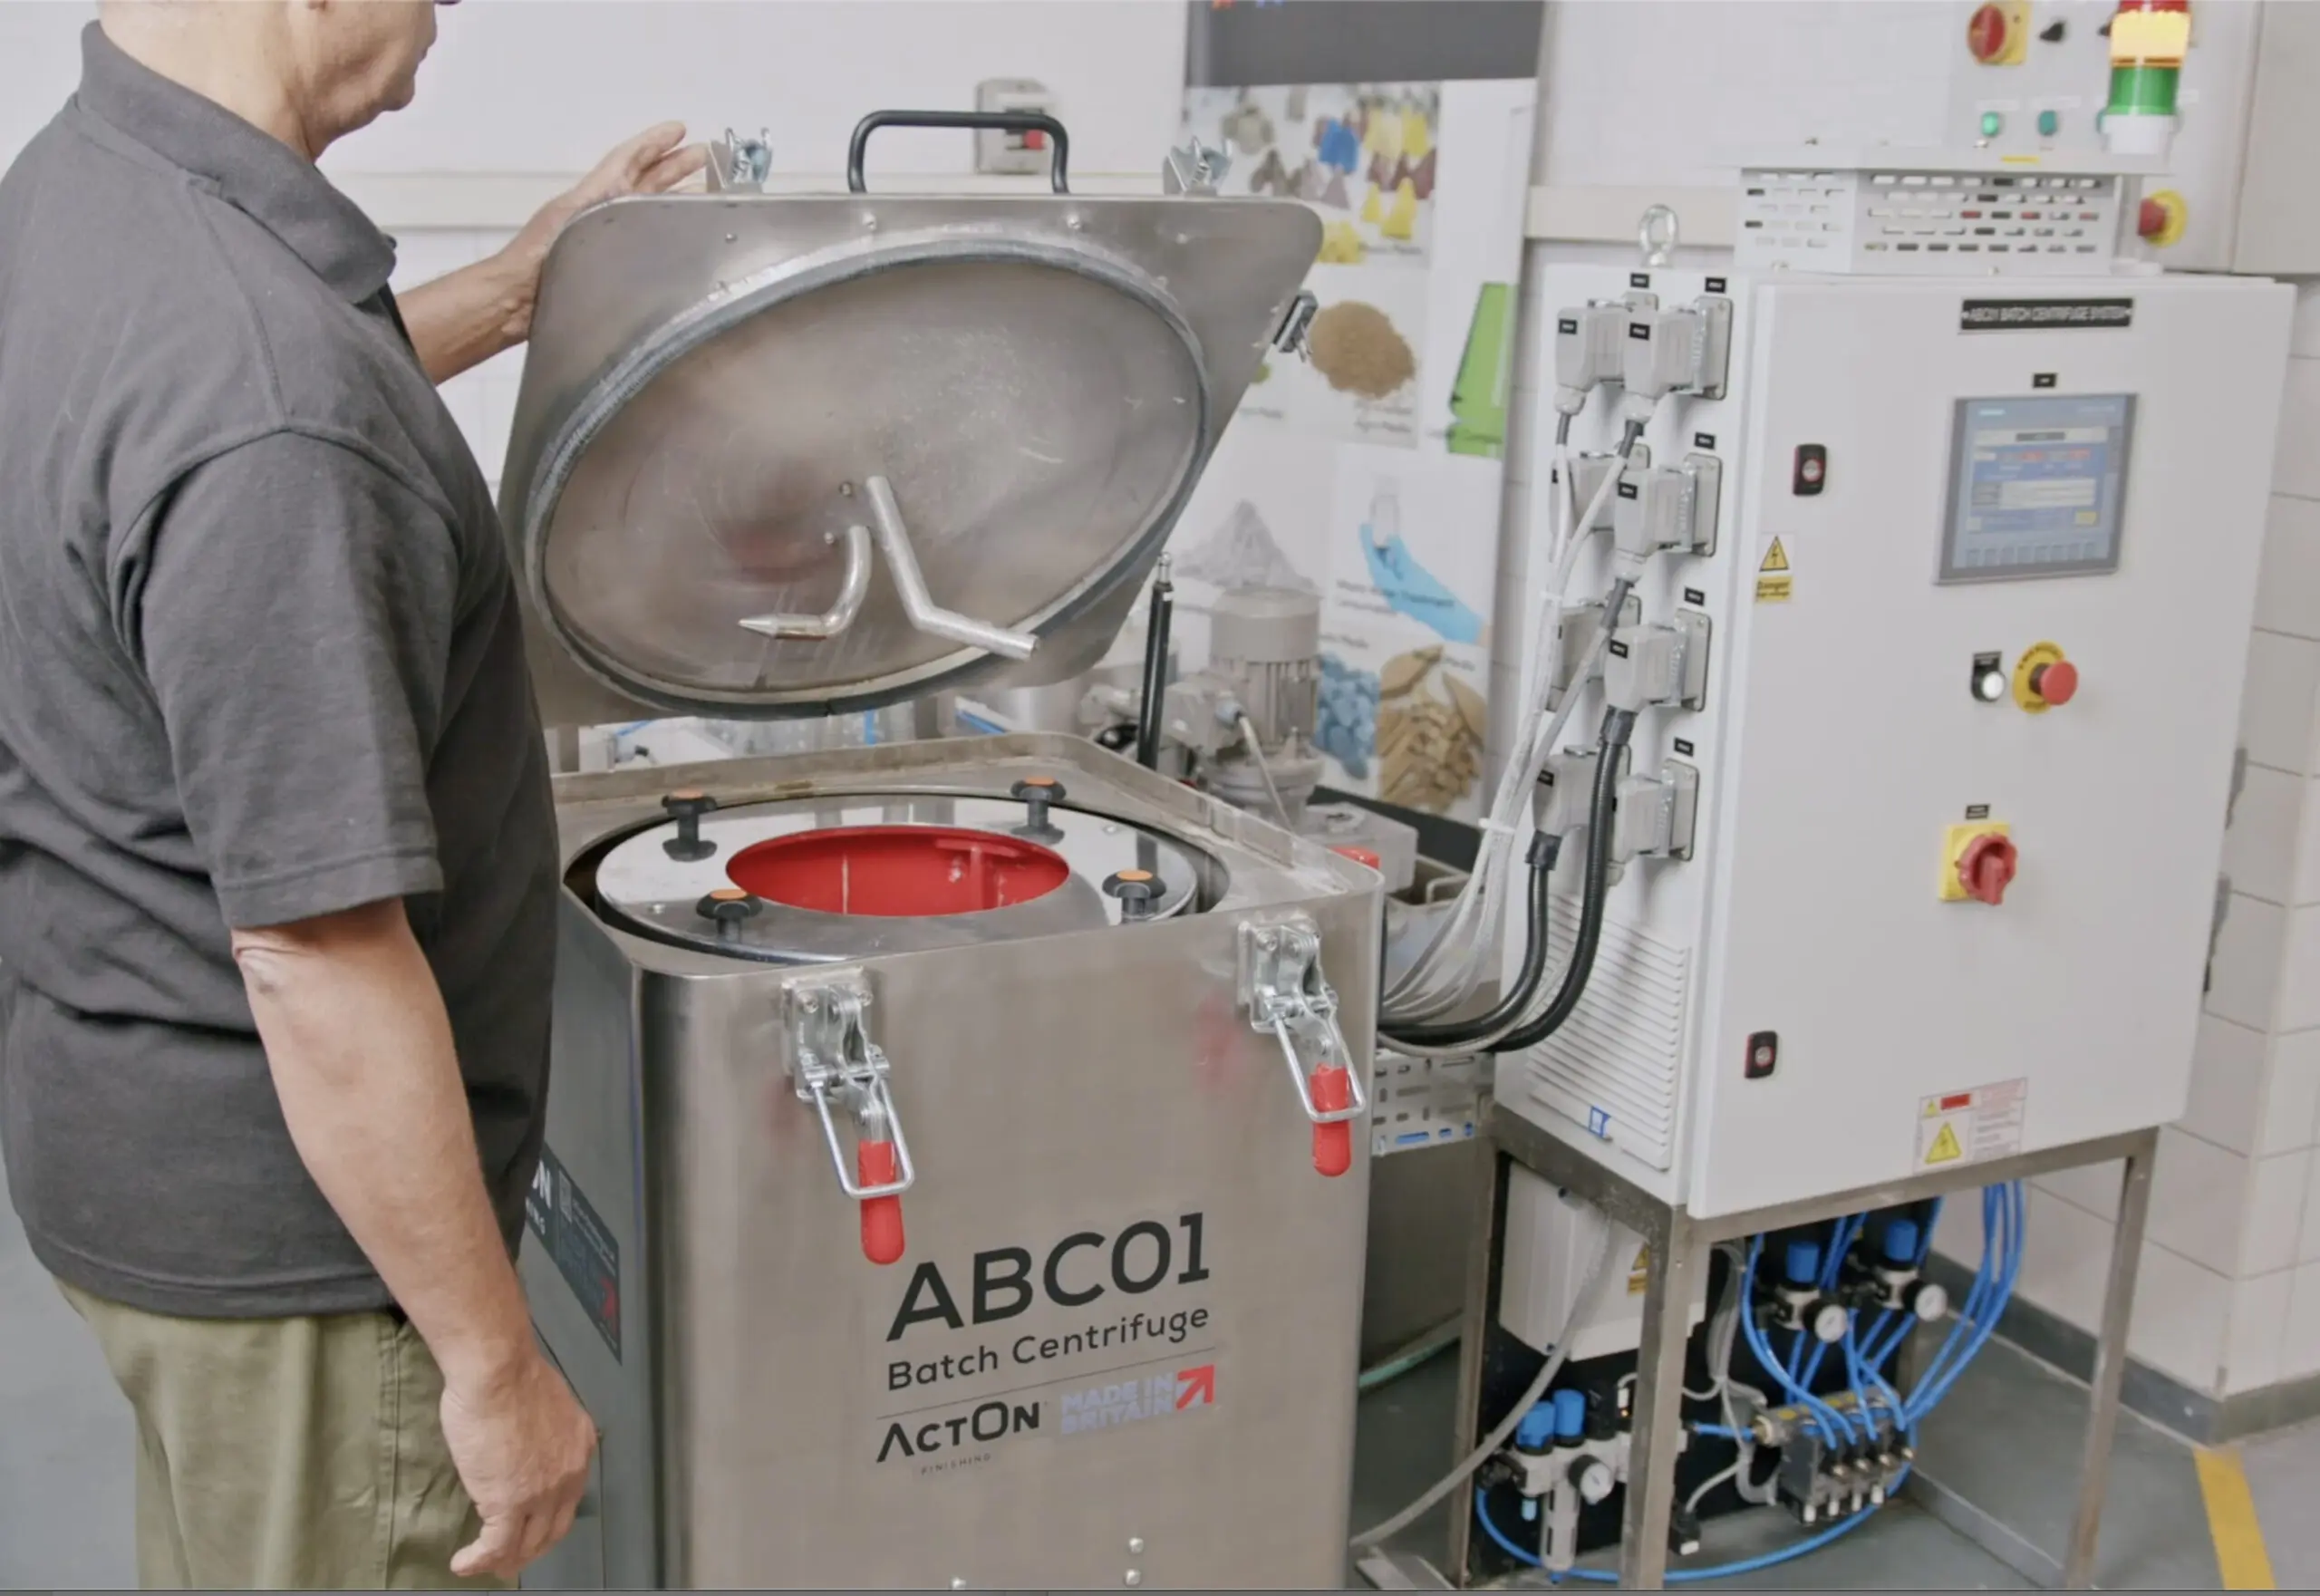 Machine de tribofinition centrifuge ABC01 avec le couvercle ouvert